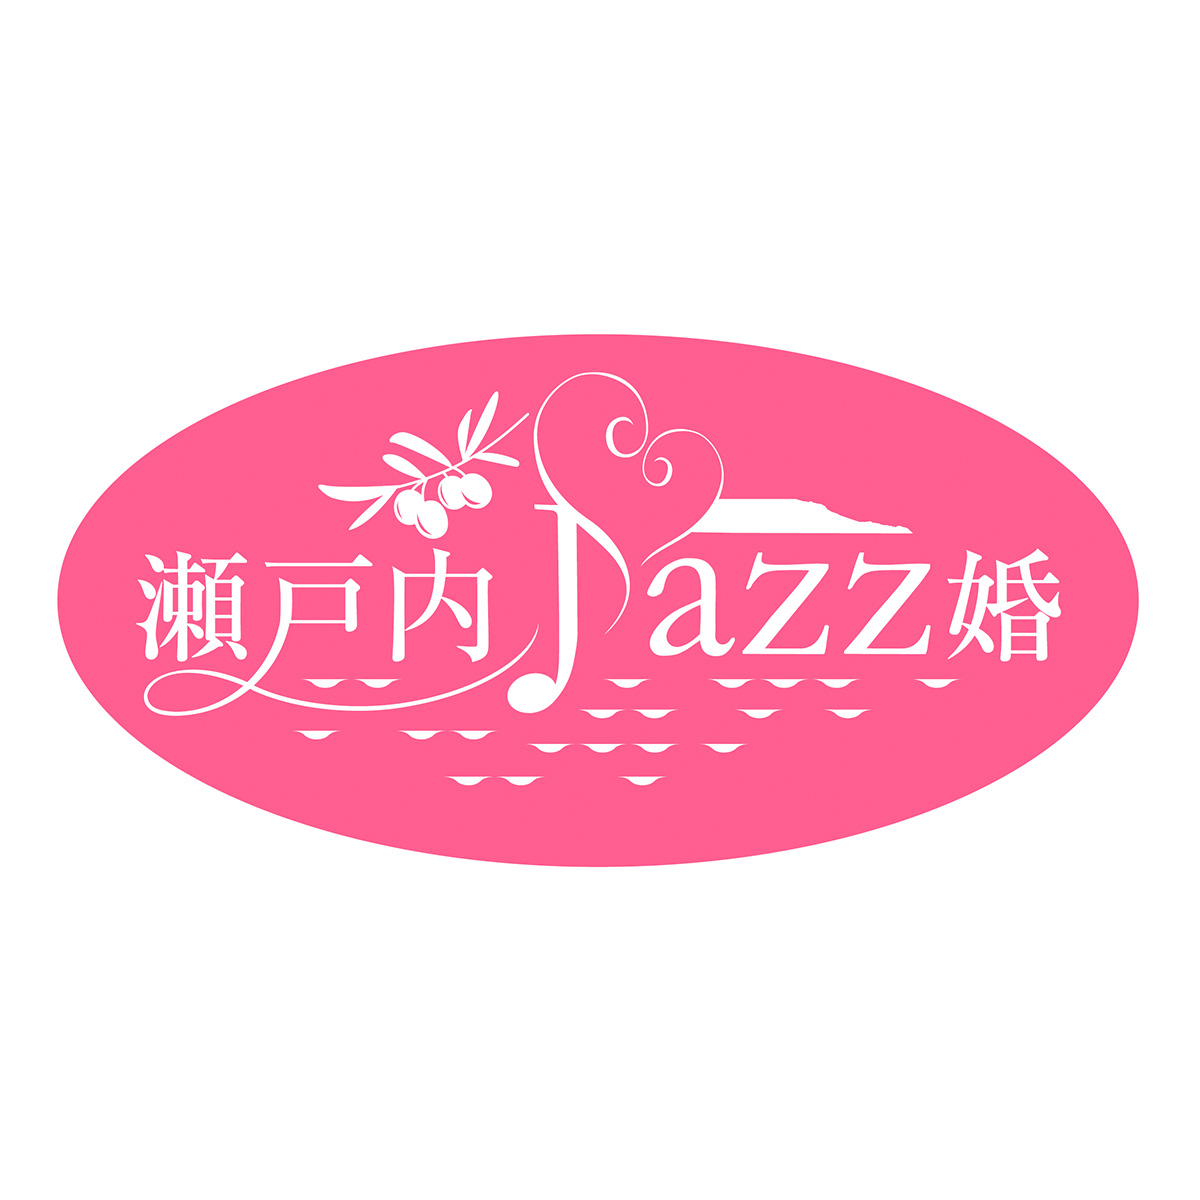 瀬戸内Jazz婚 ロゴマーク